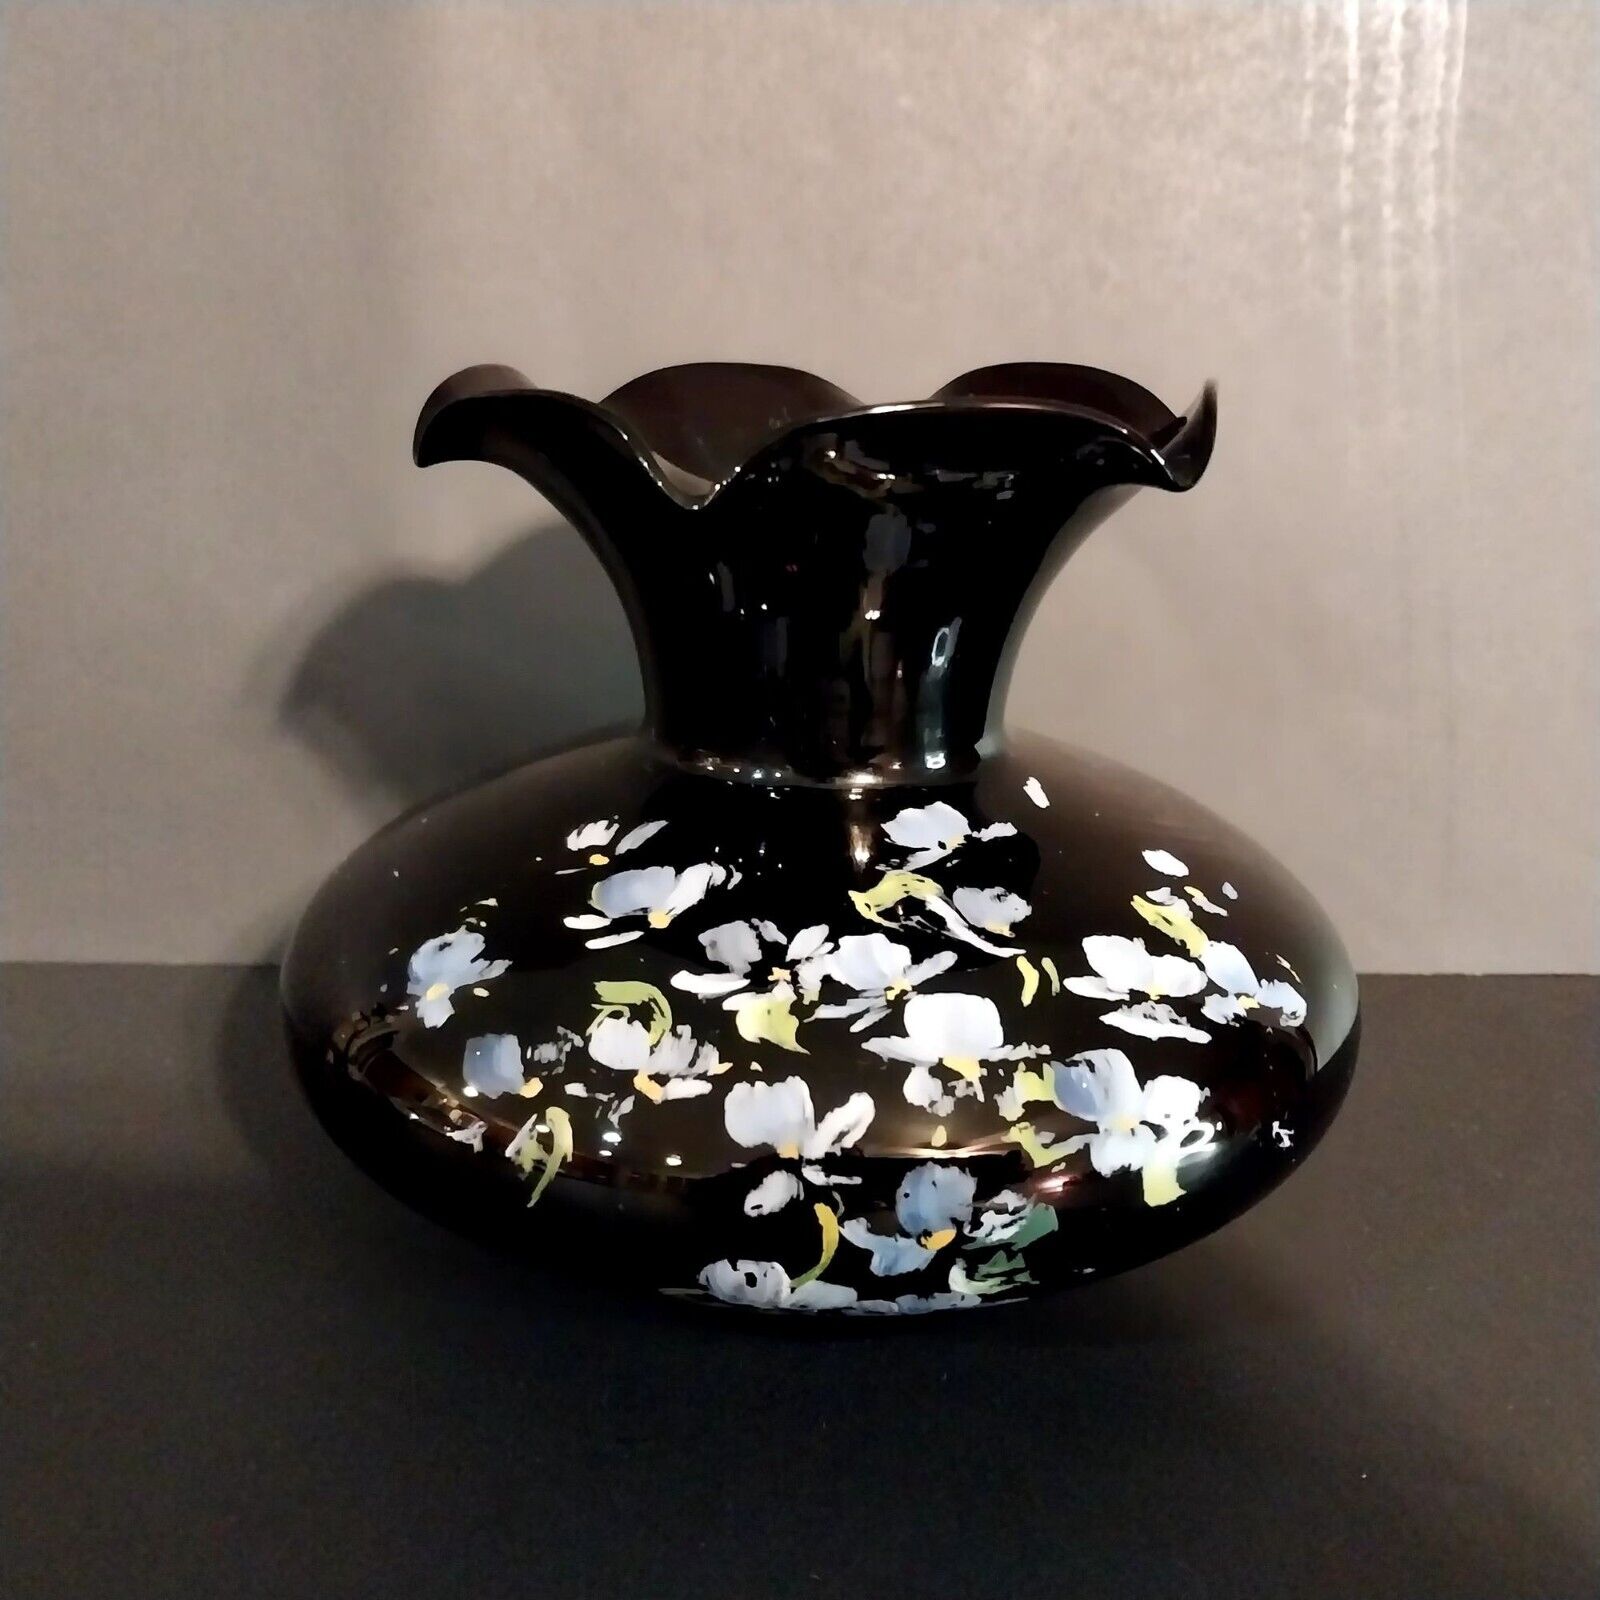 Black Amethyst Glass Vase Hand Painted Violets Pansies